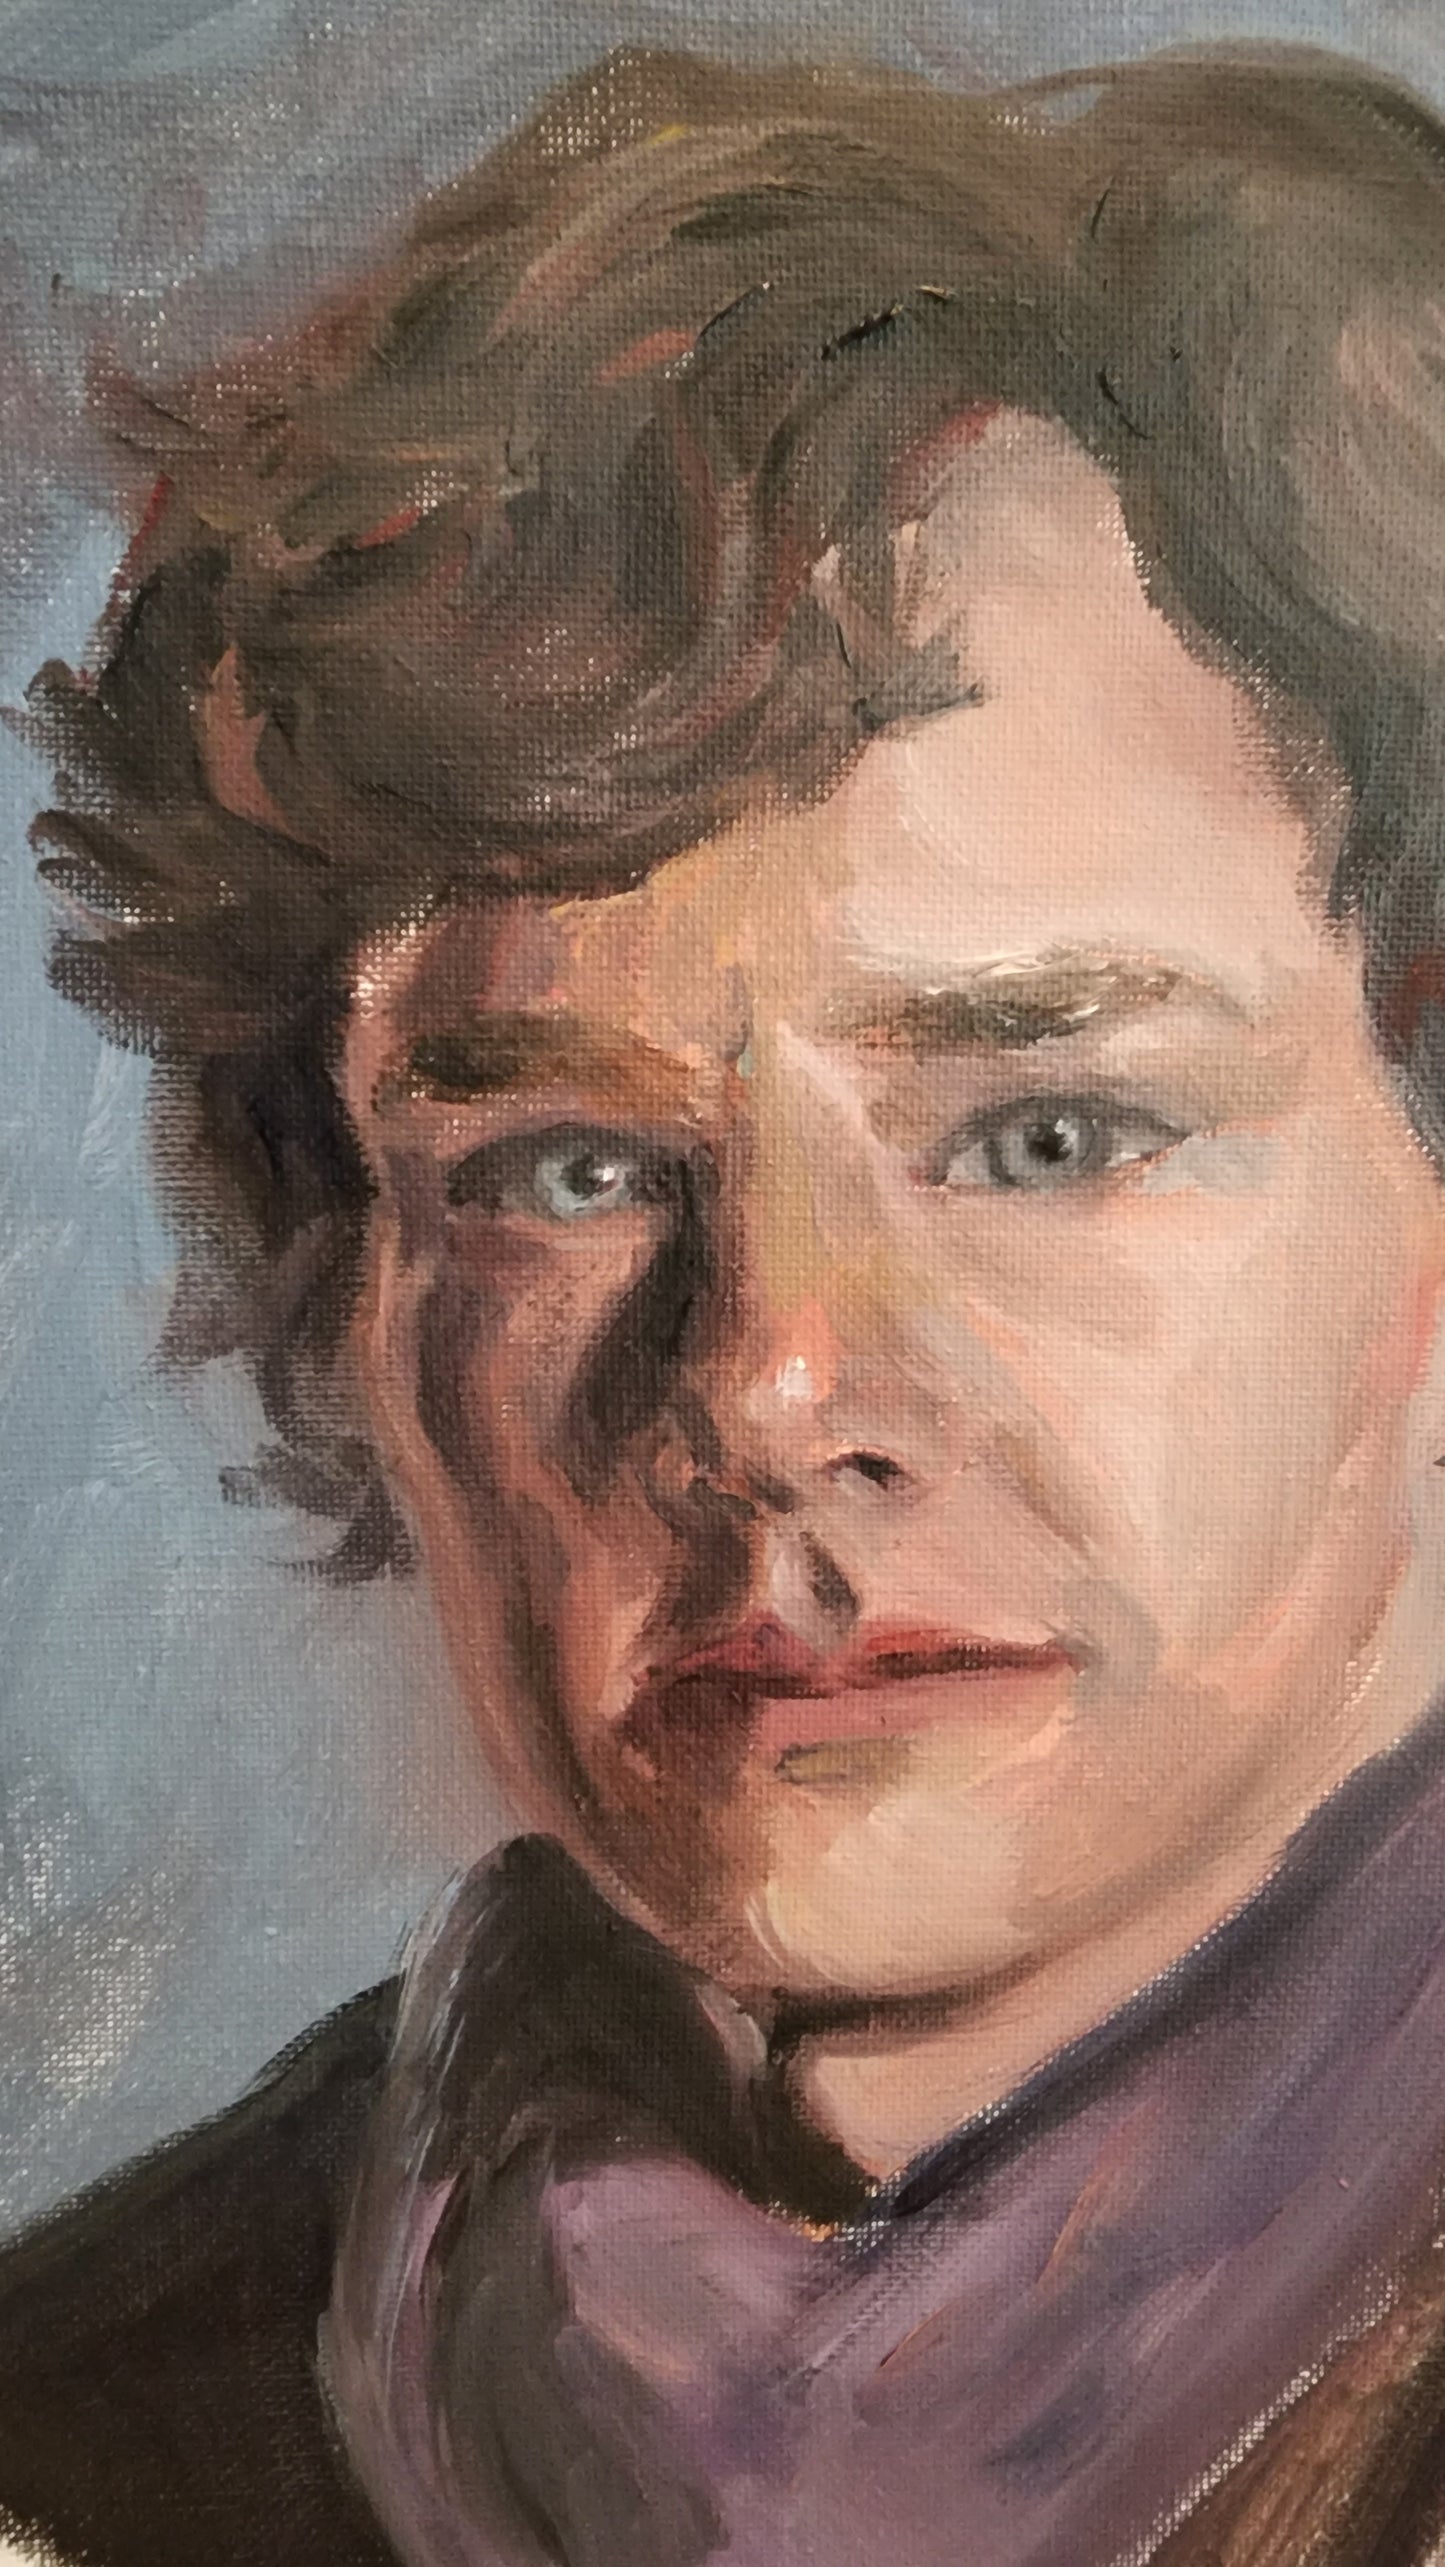 Benedict Cumberpatch "Sherlock"